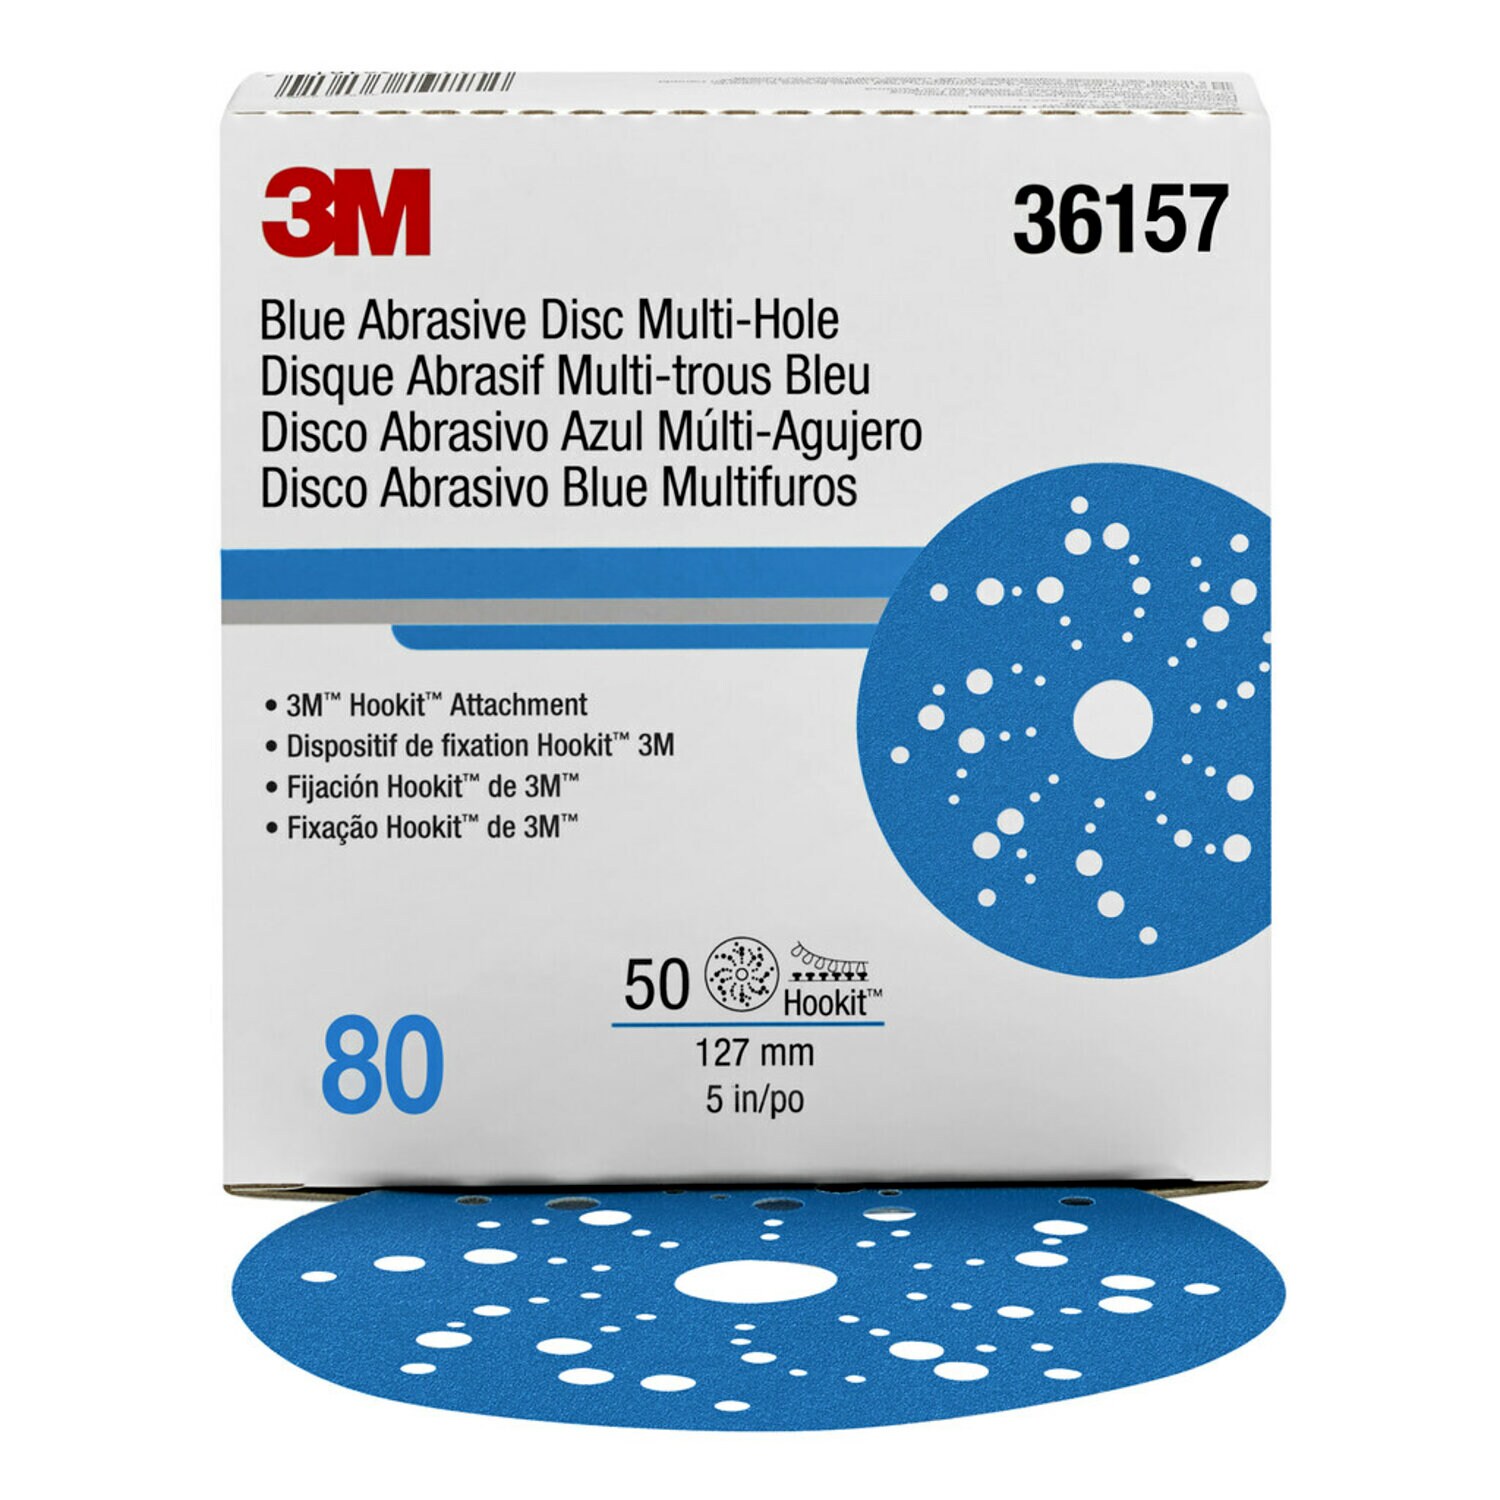 7100090975 - 3M Hookit Blue Abrasive Disc 321U Multi-hole, 36157, 5 in, 80, 50
discs per carton, 4 cartons per case